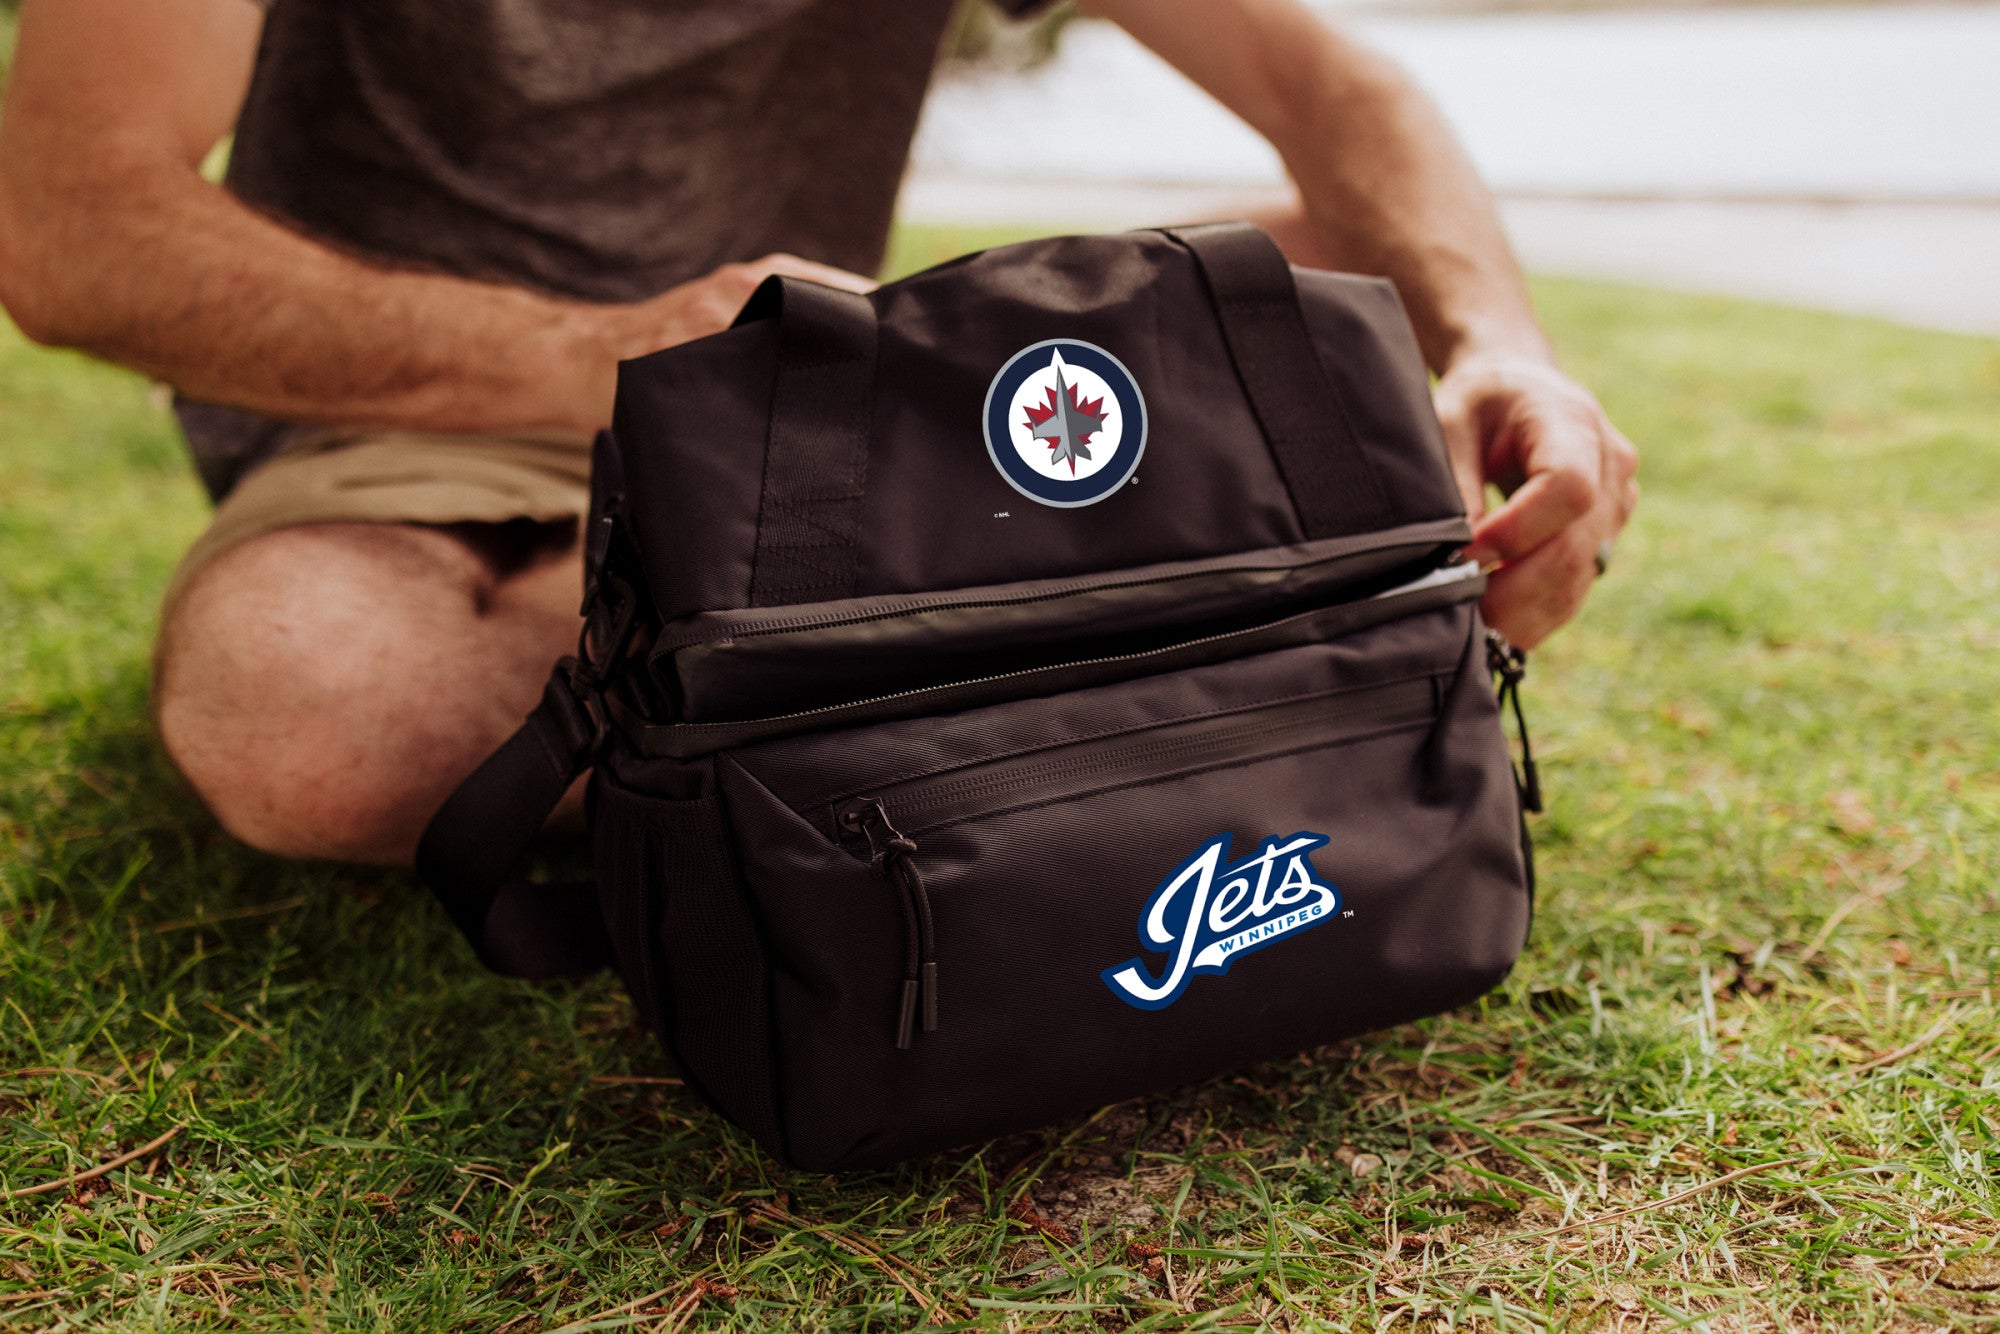 Winnipeg Jets - Tarana Lunch Bag Cooler with Utensils